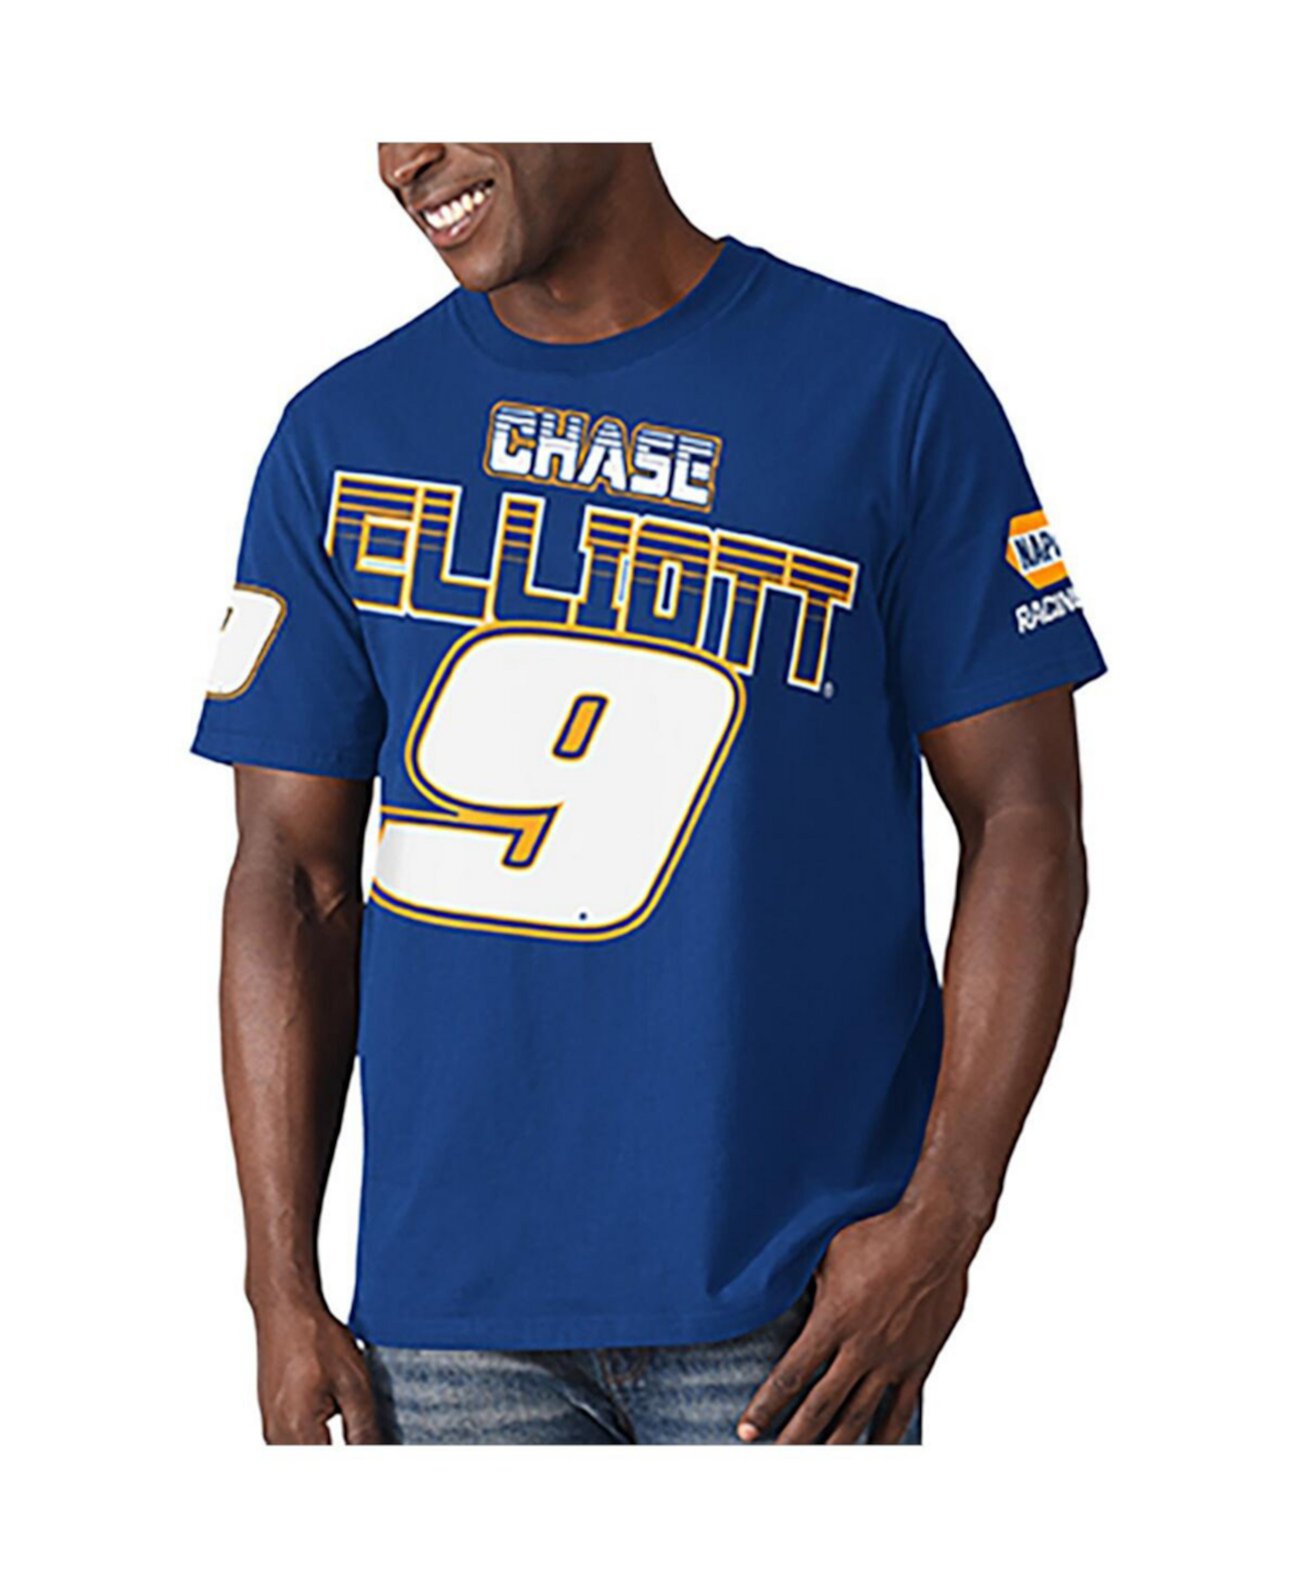 Мужская футболка Royal Chase Elliott Special Teams Starter